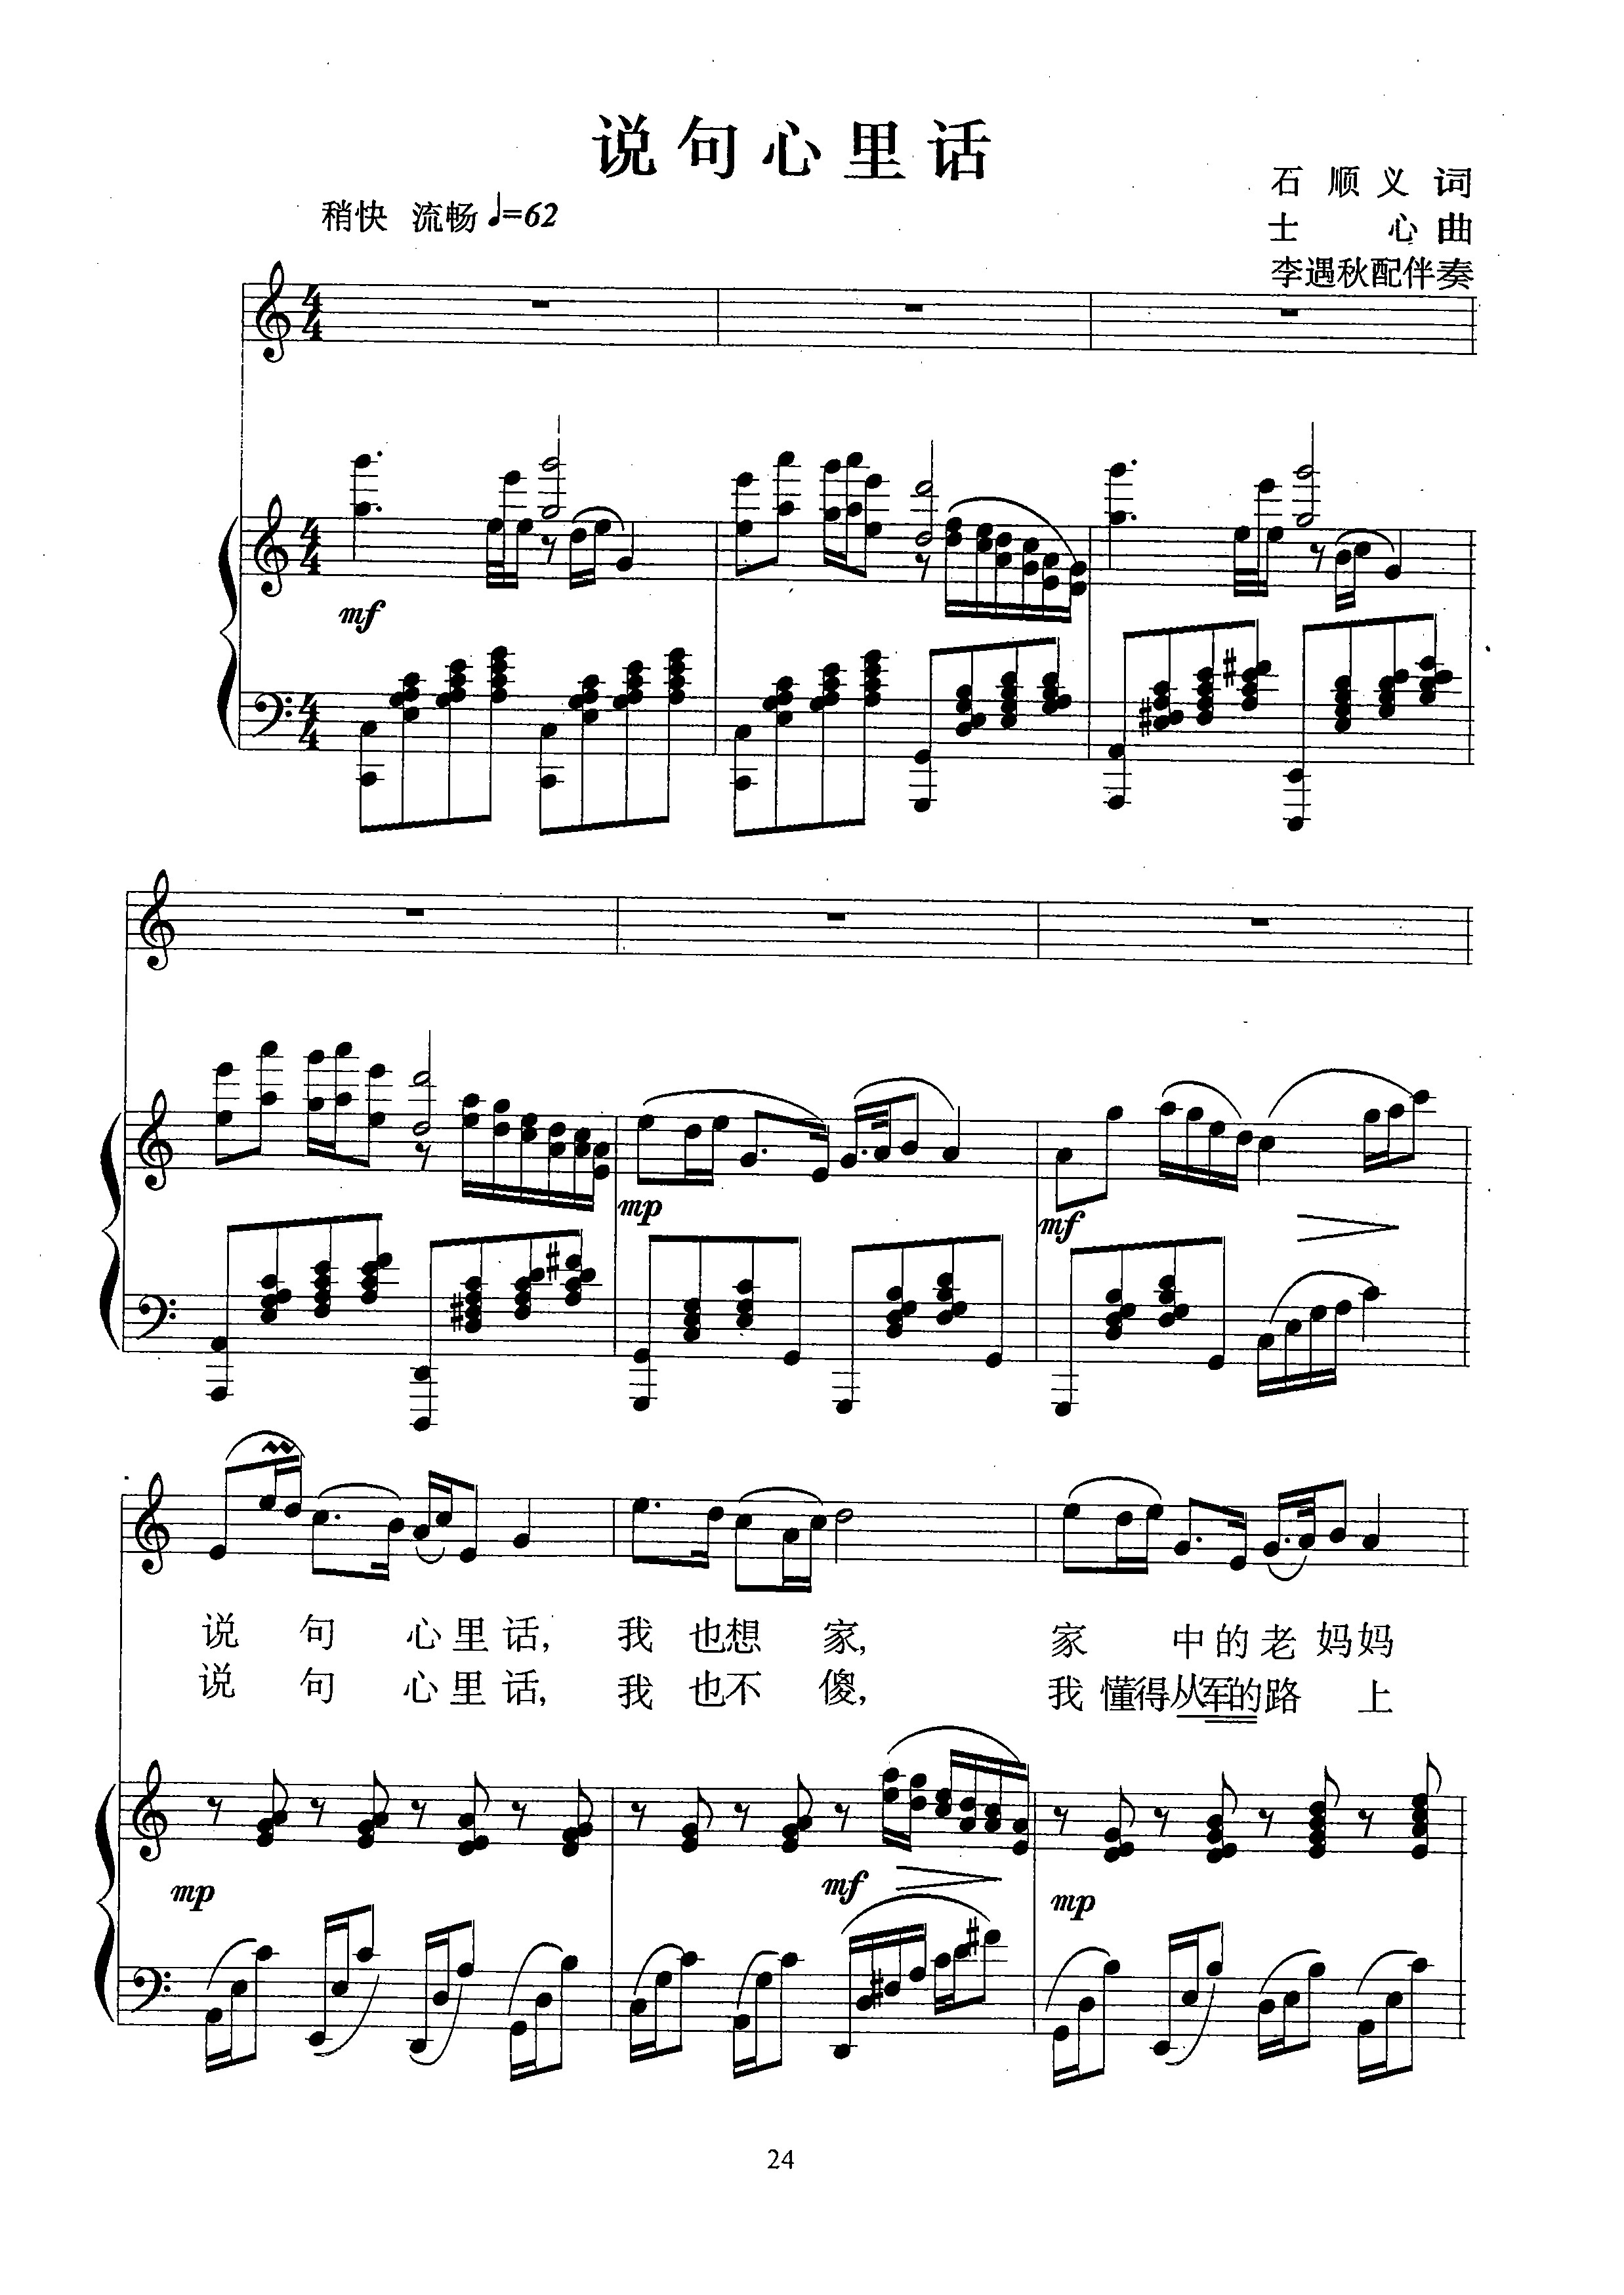 【乐谱】说句心里话 C调 声乐钢琴正谱